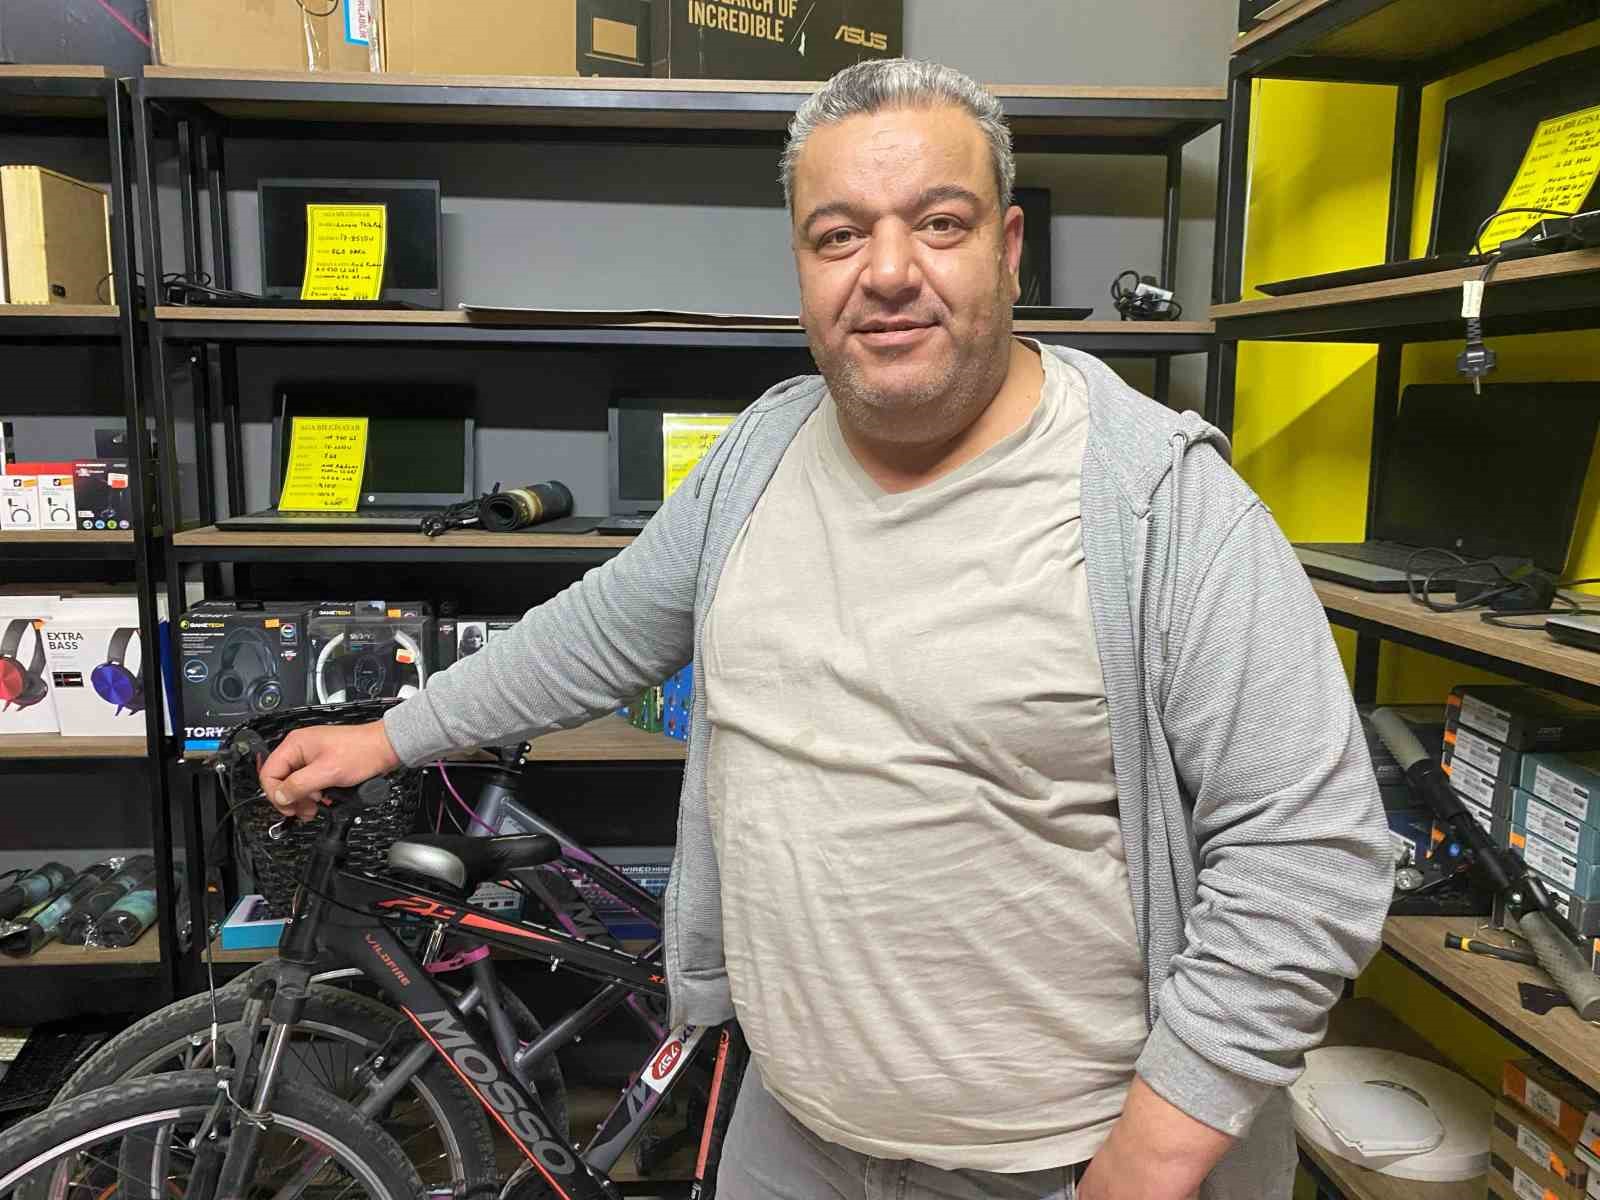 Eskişehir’de bisiklet kiralama sezonu açılıyor
